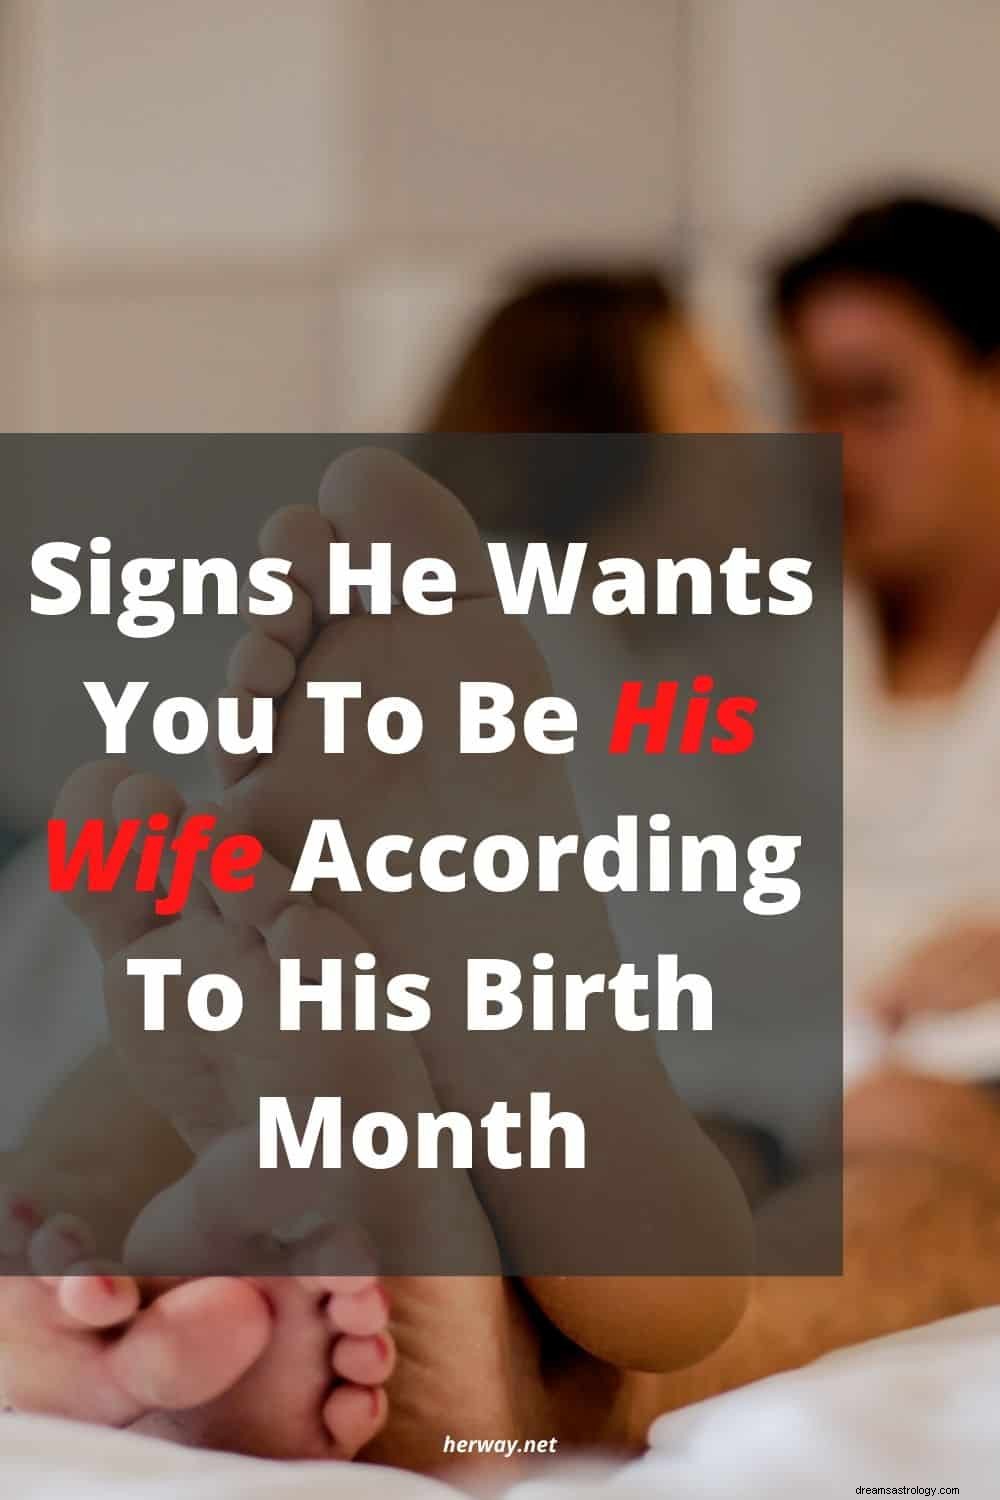 Tegn på at han vil at du skal være hans kone i henhold til fødselsmåneden hans